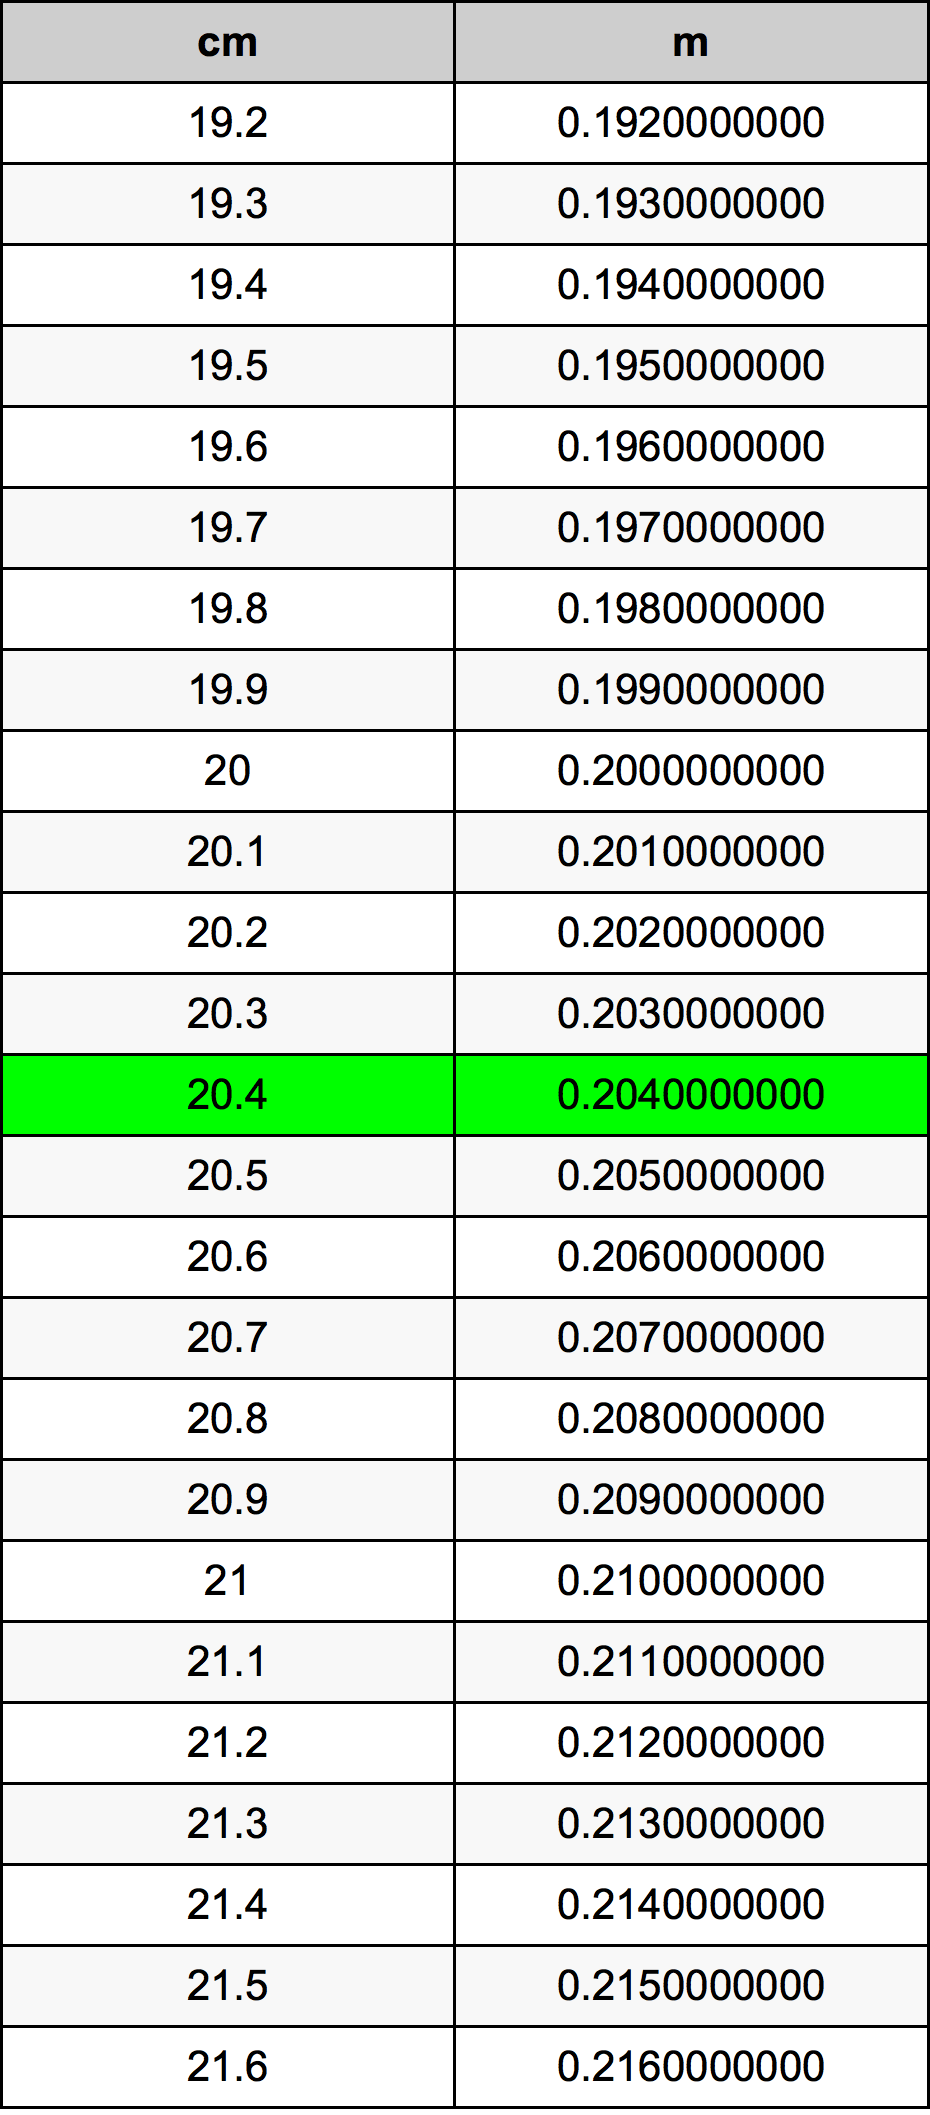 20.4 Centiméter átszámítási táblázat